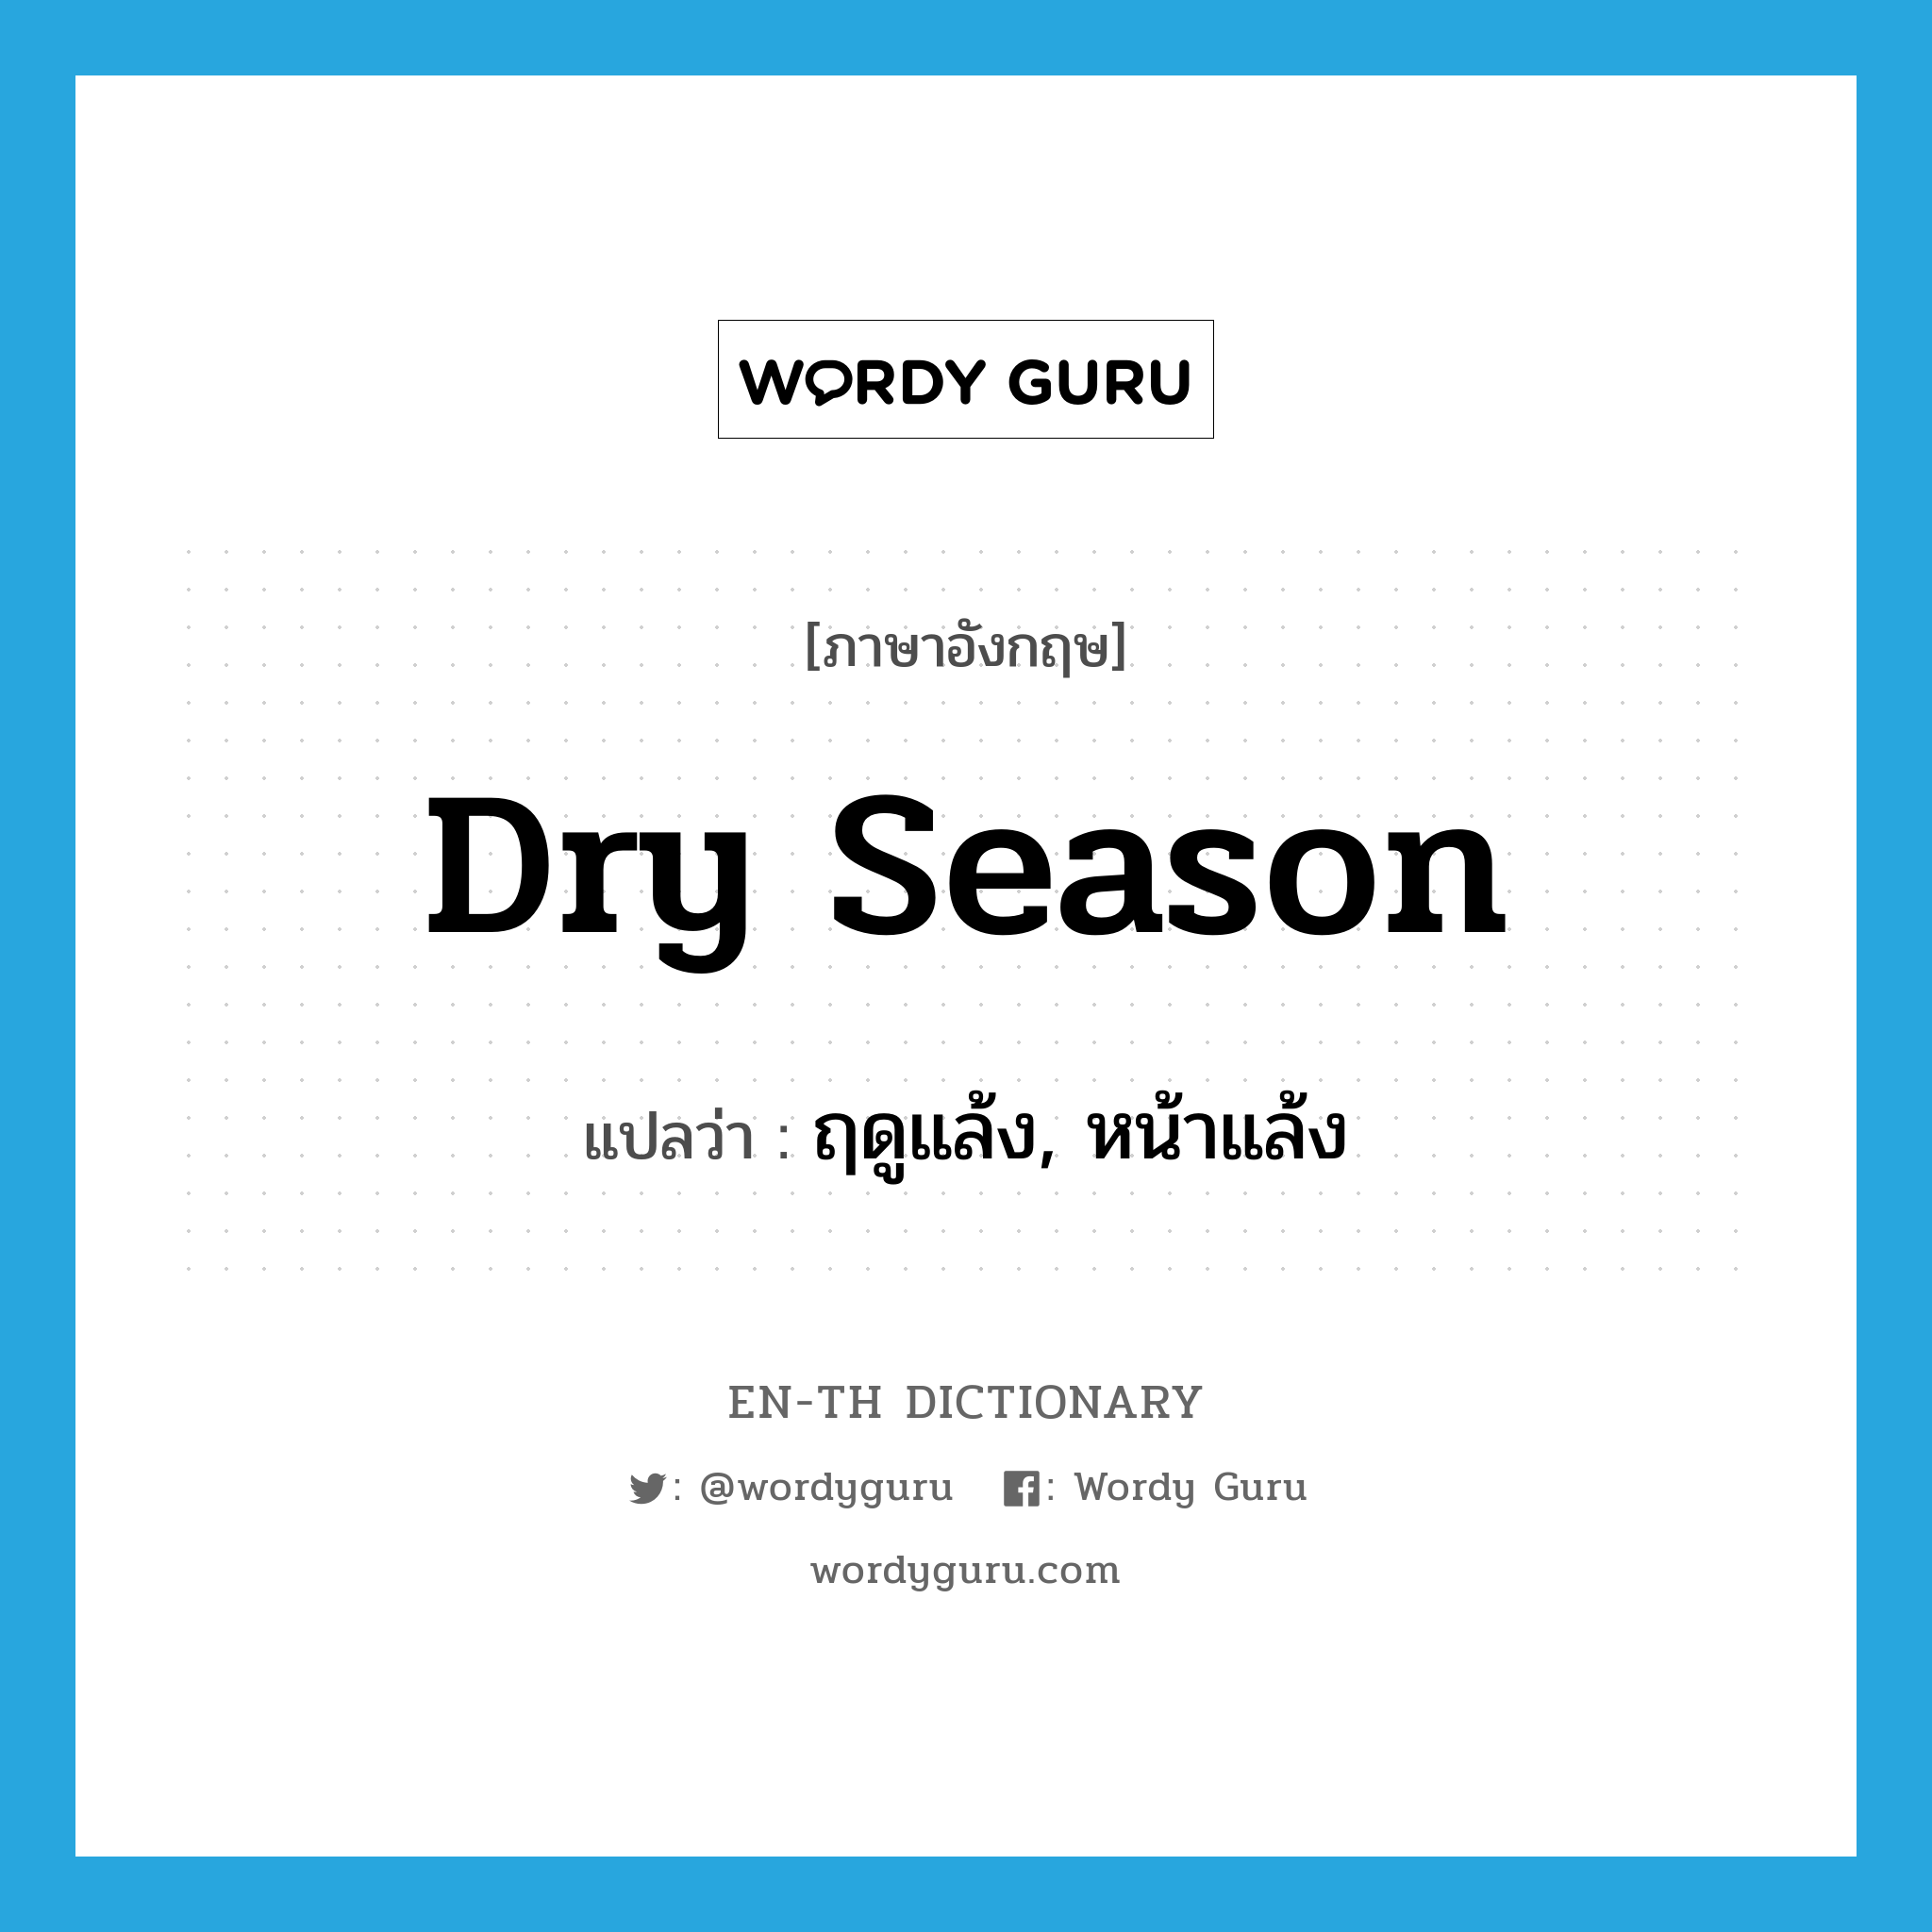 dry season แปลว่า?, คำศัพท์ภาษาอังกฤษ dry season แปลว่า ฤดูแล้ง, หน้าแล้ง ประเภท N หมวด N